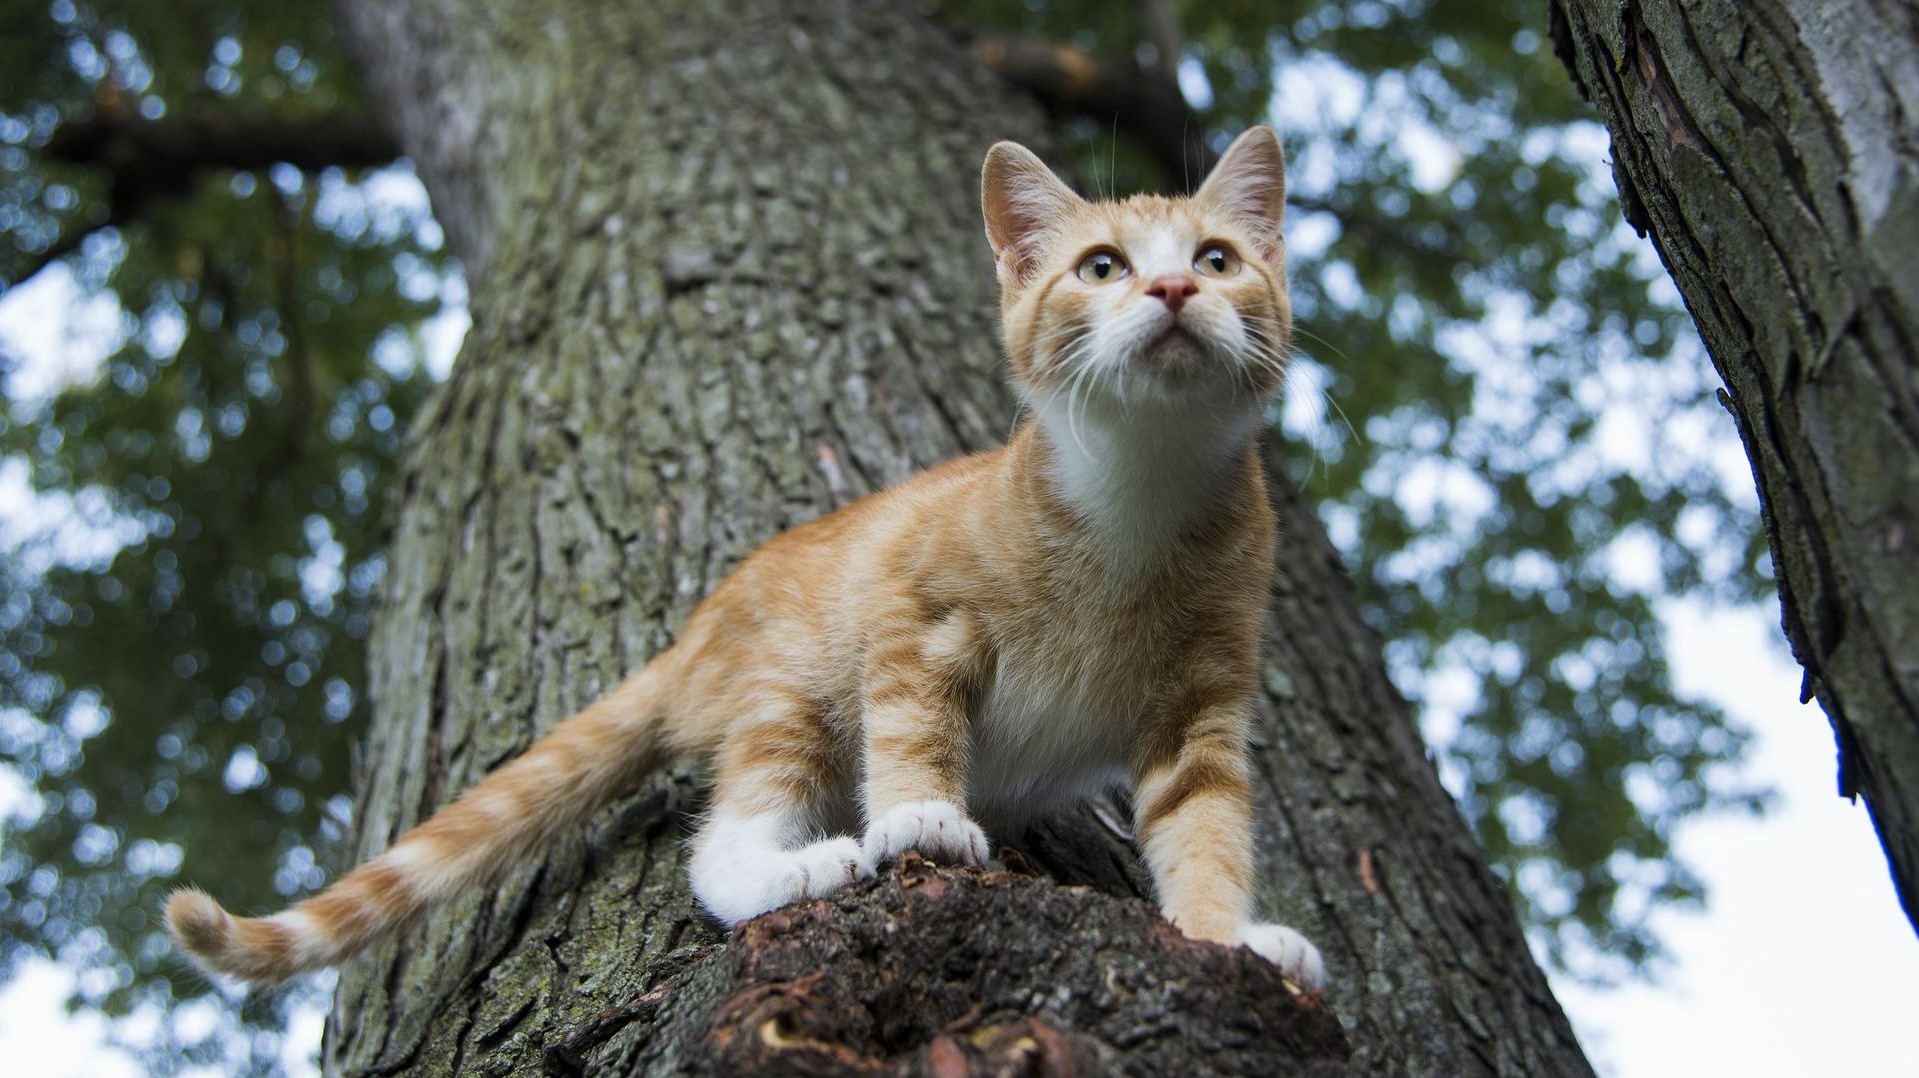 Vörös macska a fán figyel